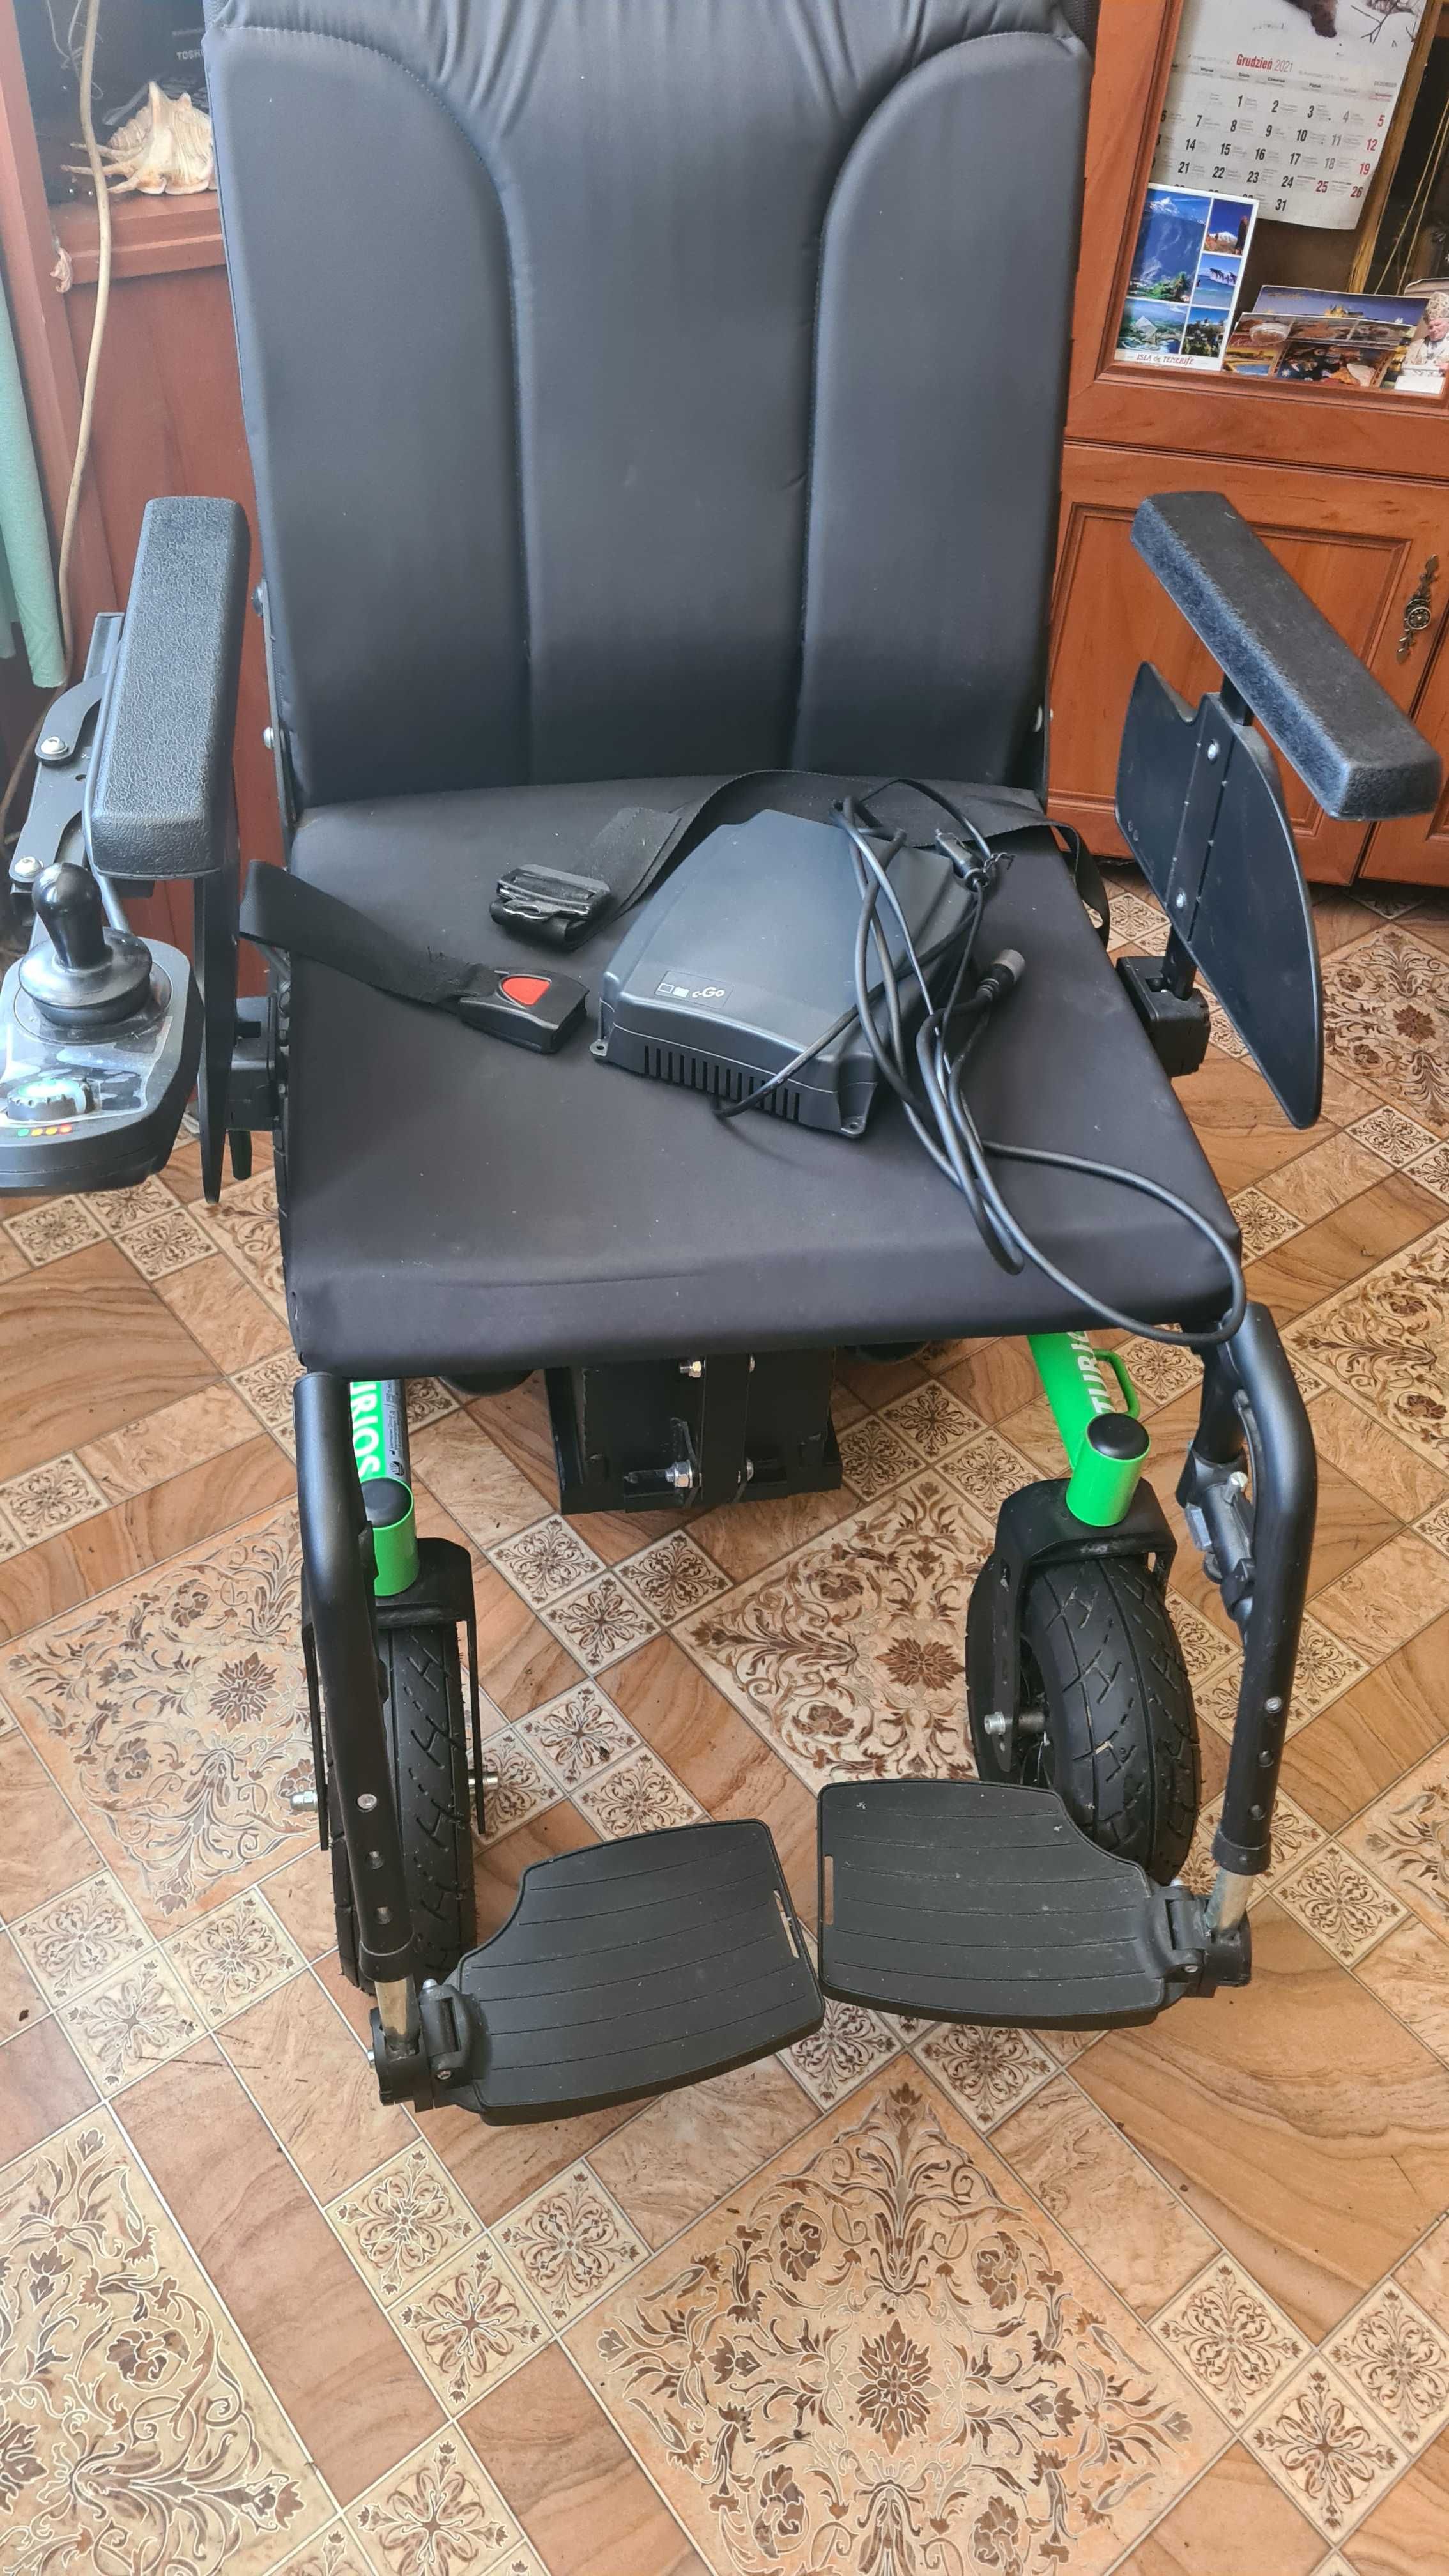 Elektryczny Wózek inwalidzki VARMEIREN Turios